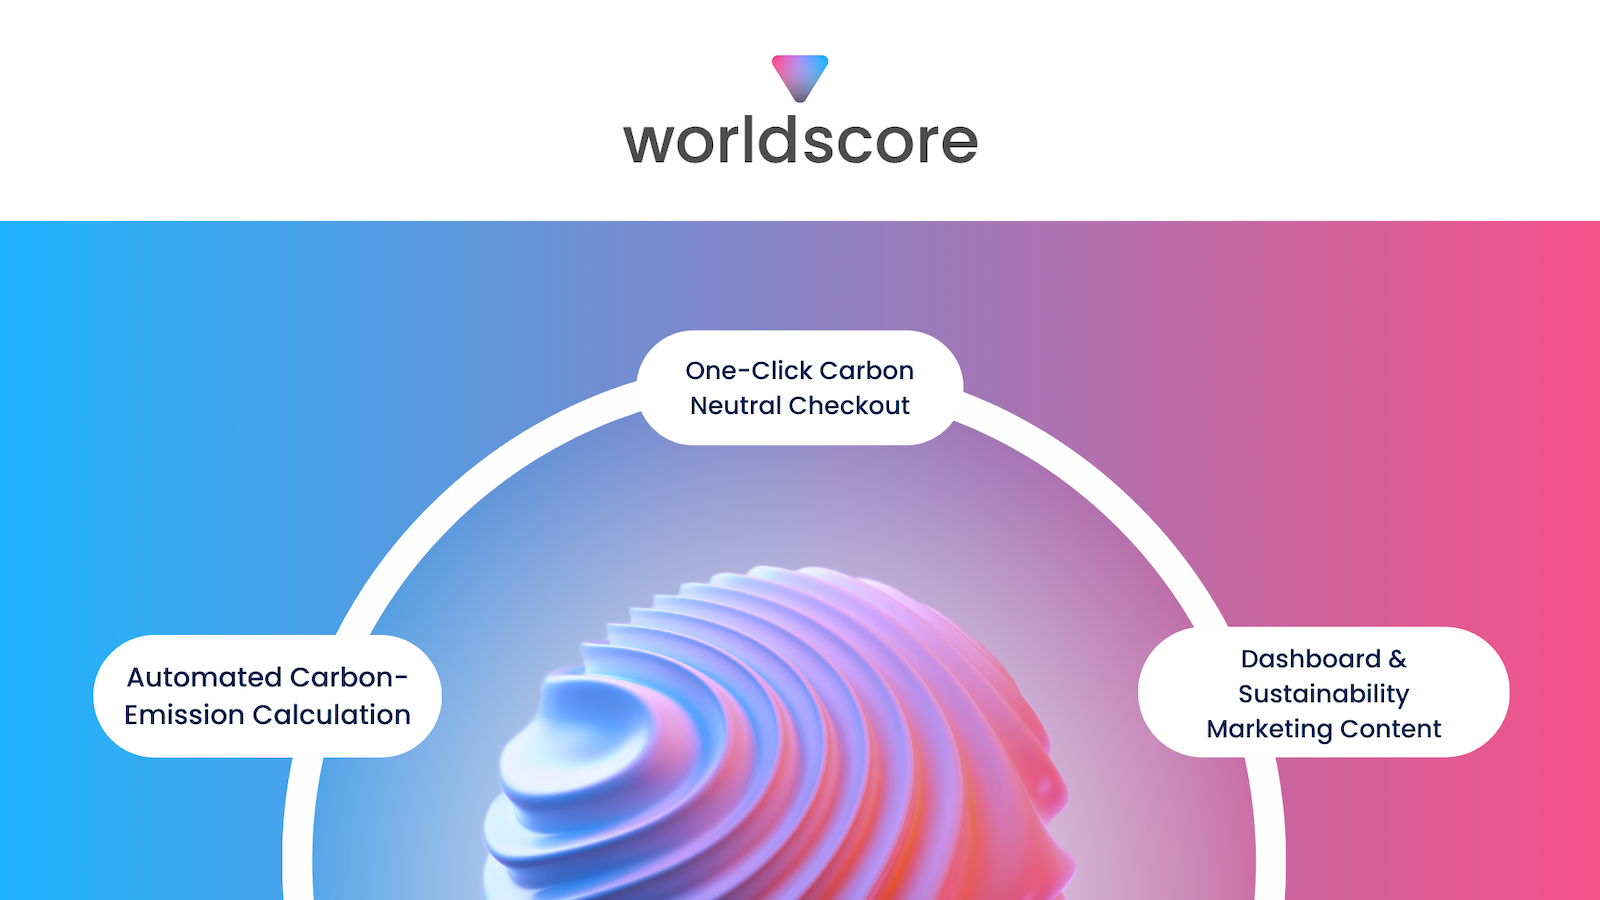 worldscore logo bovenop een golvende bol die de functies beschrijft